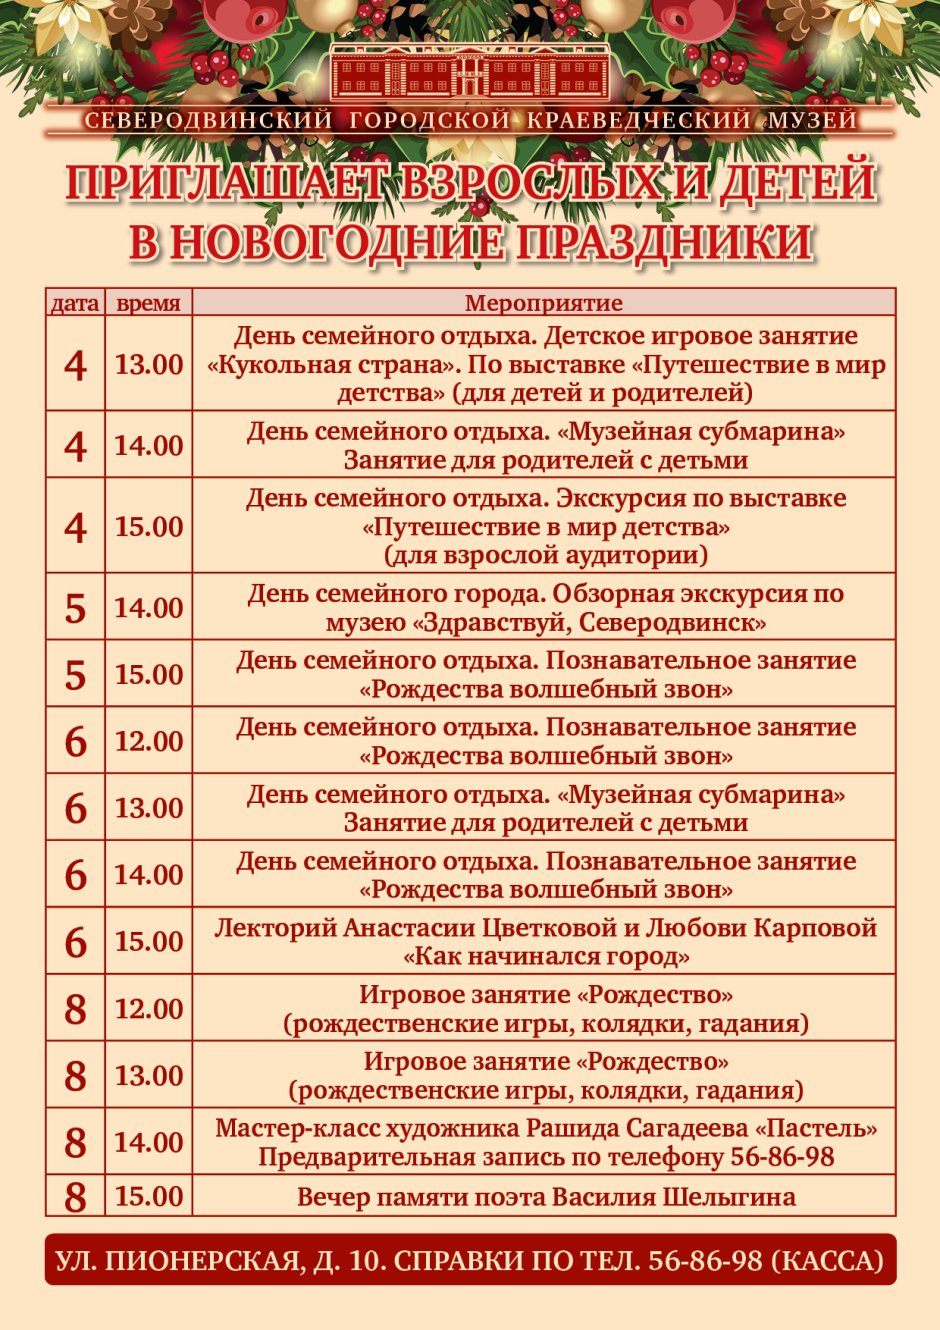 Праздники в сентябре 2022 года в России список праздничных дат